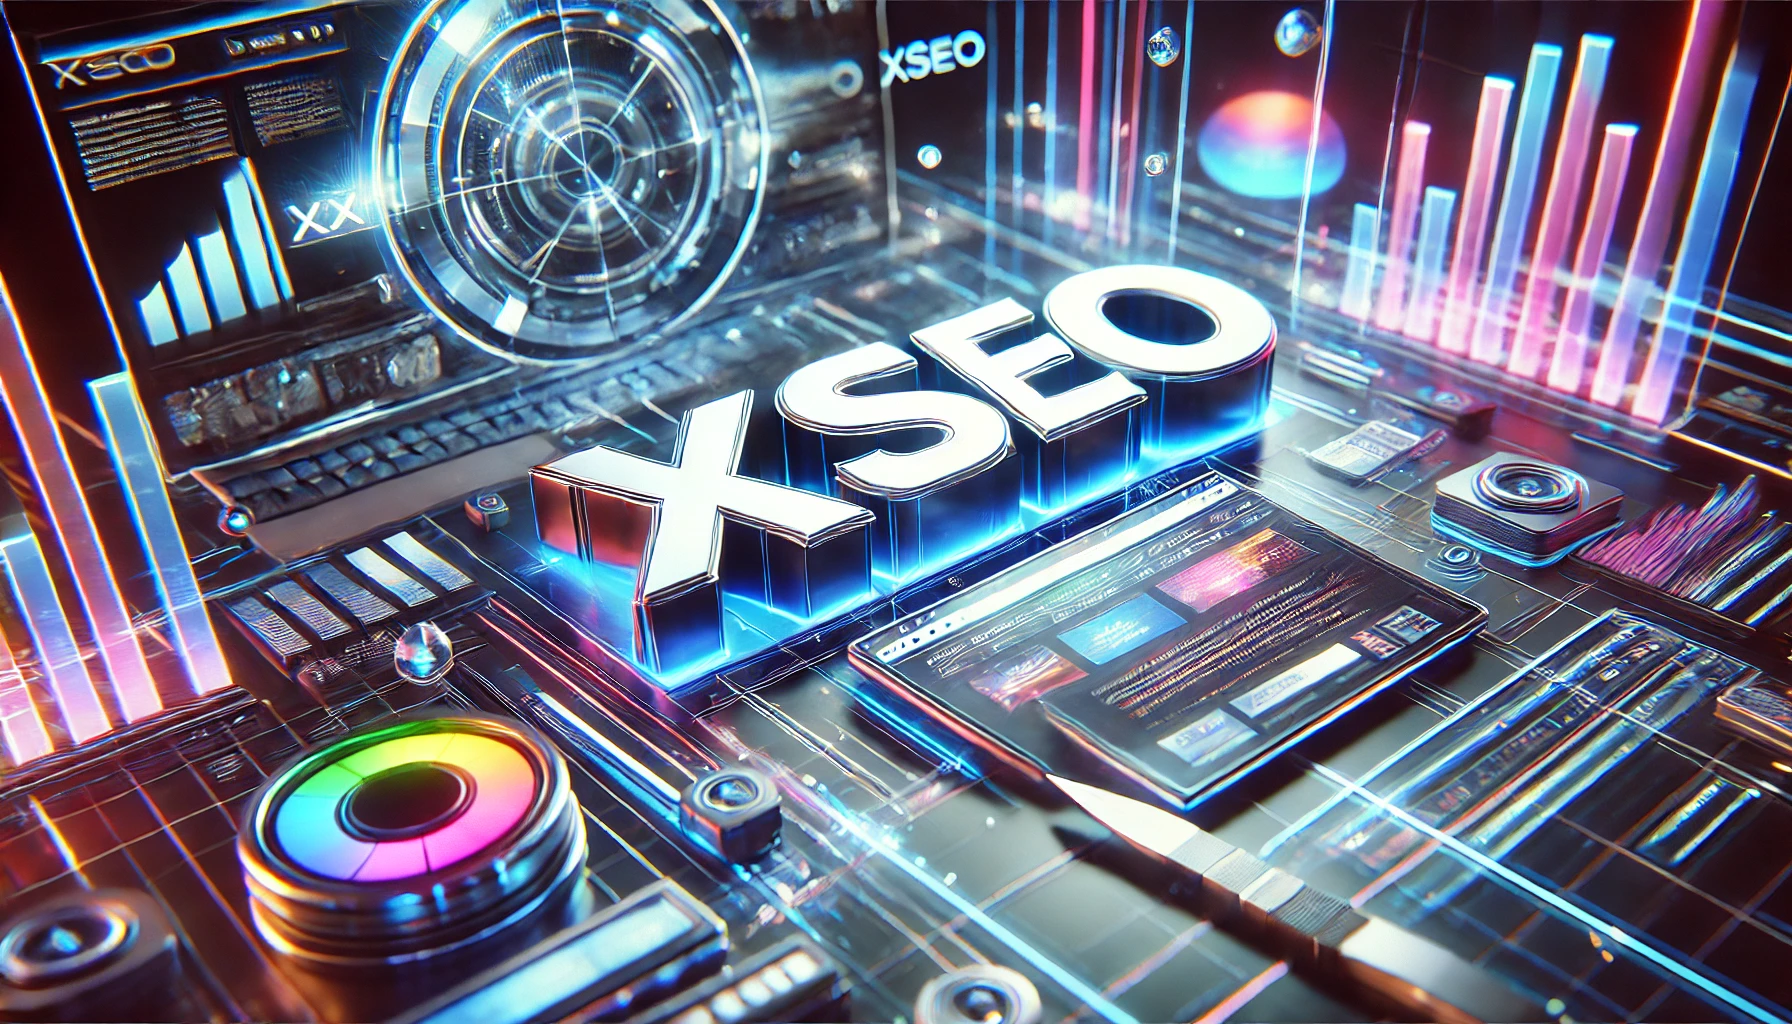 Xseo.in — незаменимый инструмент вебмастера